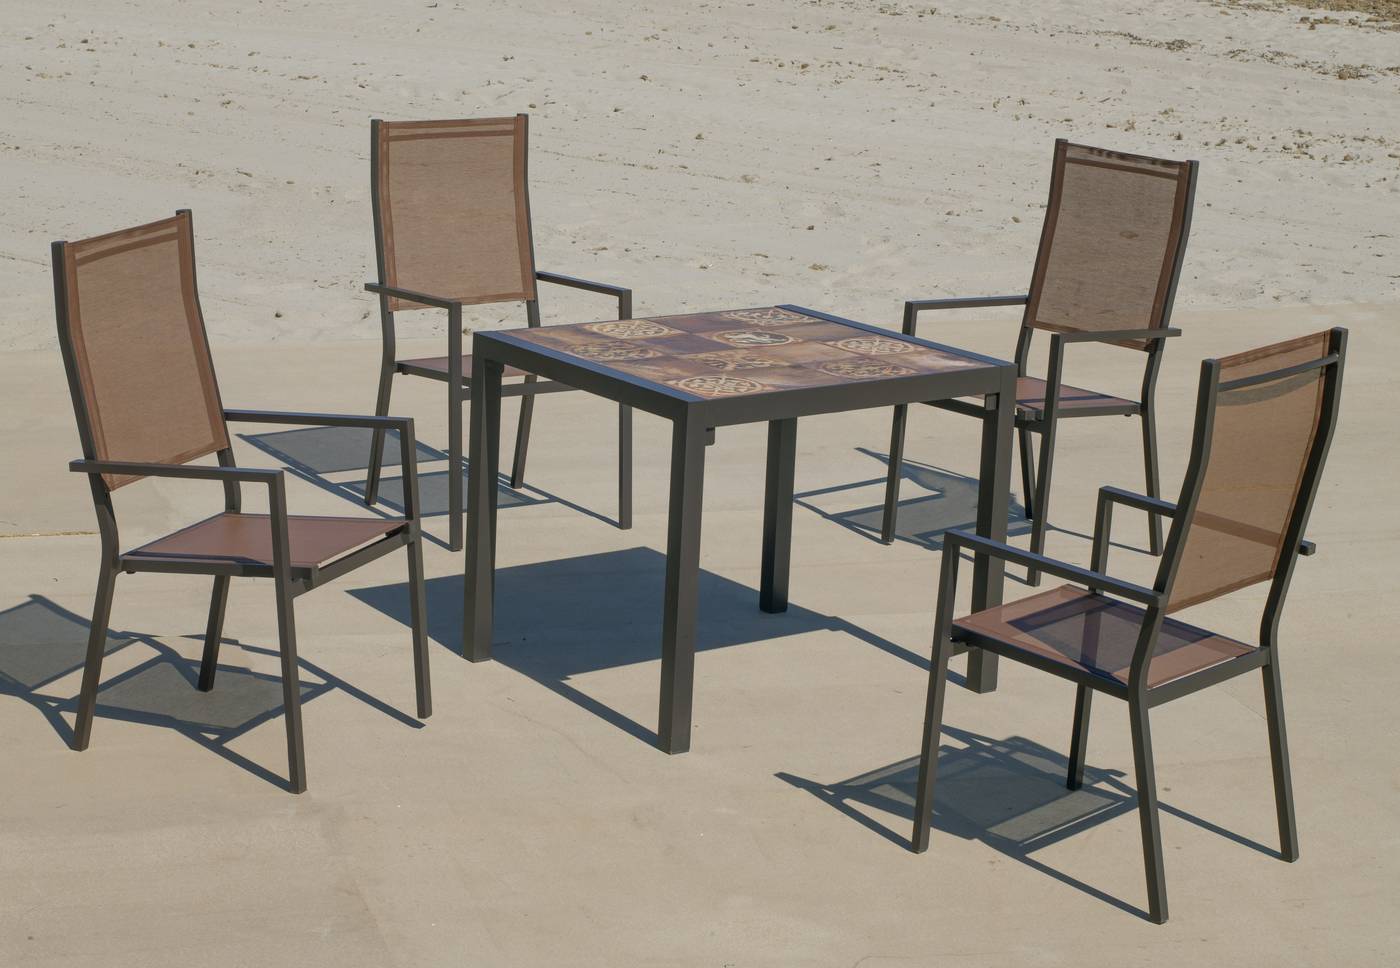 Conjunto de aluminio color marrón: Mesa cuadrada con tablero mosaico de 80 cm + 4 sillones altos de textilen.